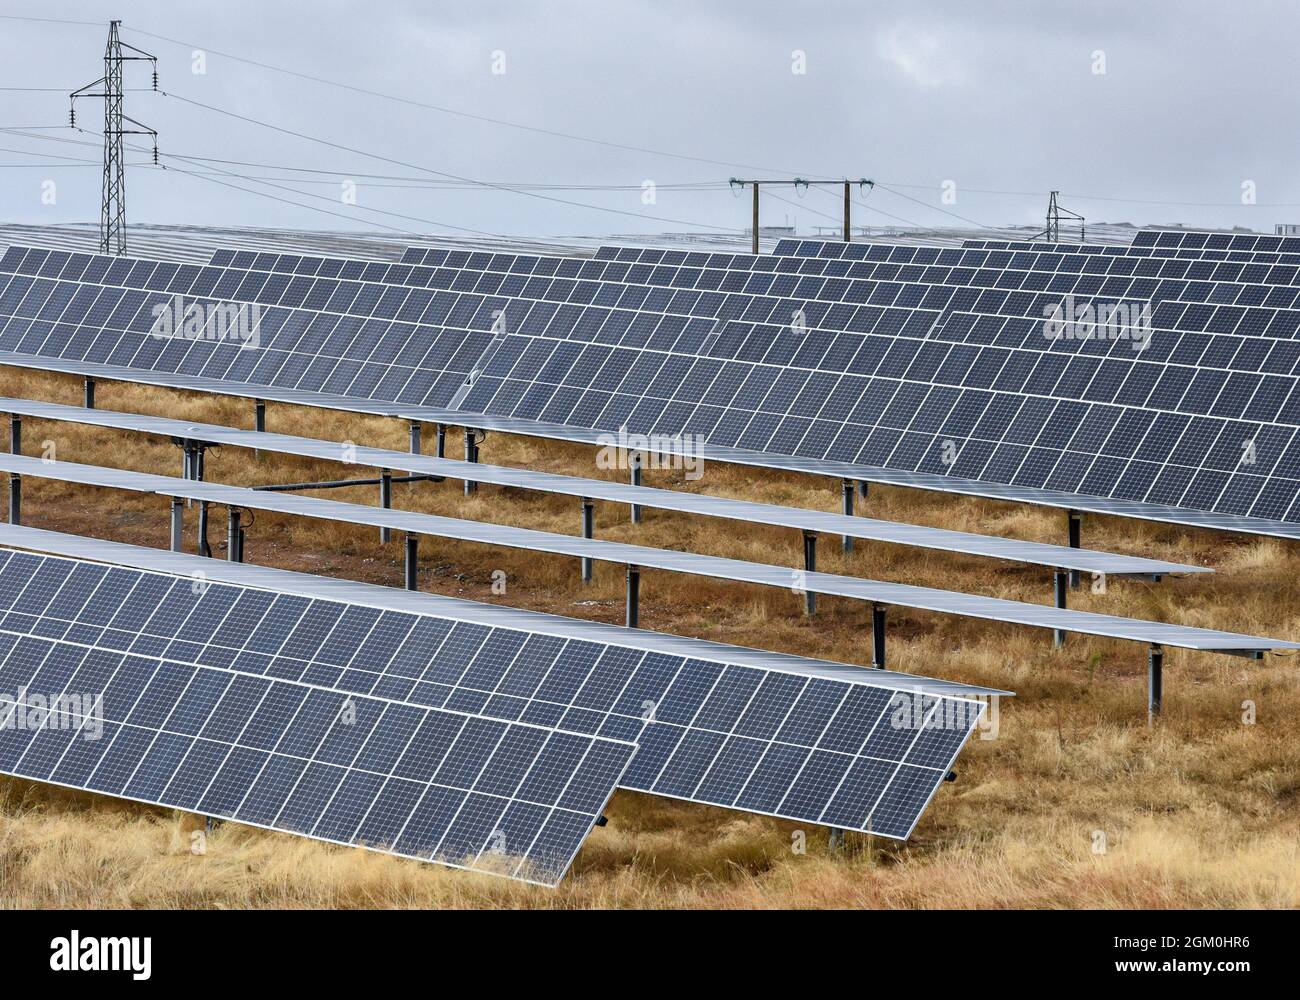 Ceclavon, Caceres, Spagna. 15 settembre 2021. L'impianto fotovoltaico della CeclavinÂ, costruito e gestito da Iberdrola con 850000 moduli e la potenza finale sarà di 328MW. Il governo spagnolo ha annunciato un'indagine contro la società energetica Iberdrola, a causa dello svuotamento improvviso di due serbatoi idroelettrici: Ricobayo (Zamora) e ValdecaÃ±AS (CÃceres), durante il picco del prezzo della produzione di energia. Iberdrola ha registrato una produzione di energia idroelettrica del 37.9% nel primo semestre dell'anno. Ora c'è un terzo caso possibile in corso di indagine, il secondo più grande Hydr spagnolo Foto Stock